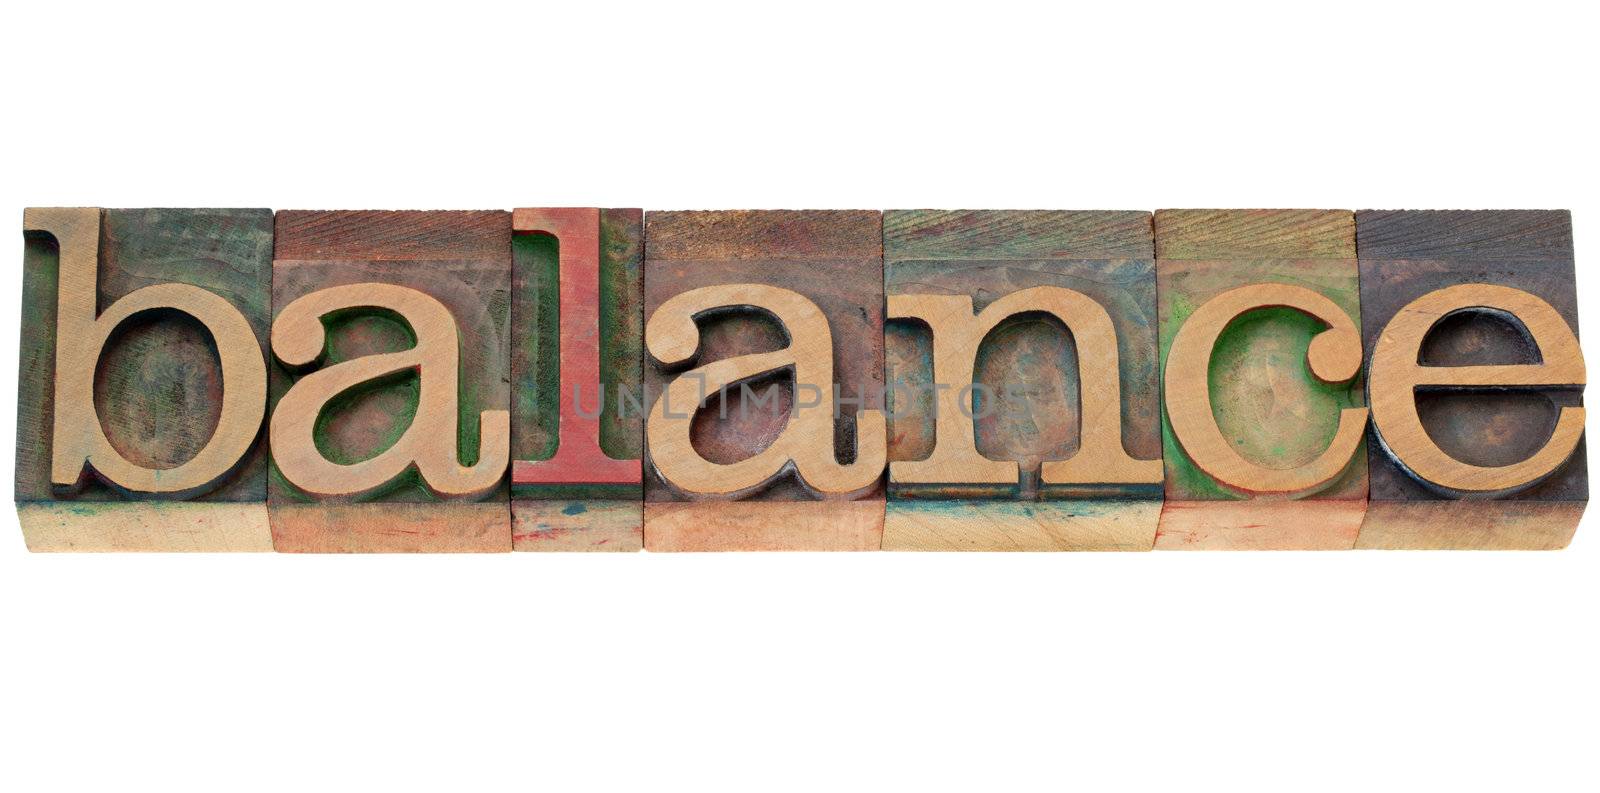 balance word in letterpress type by PixelsAway